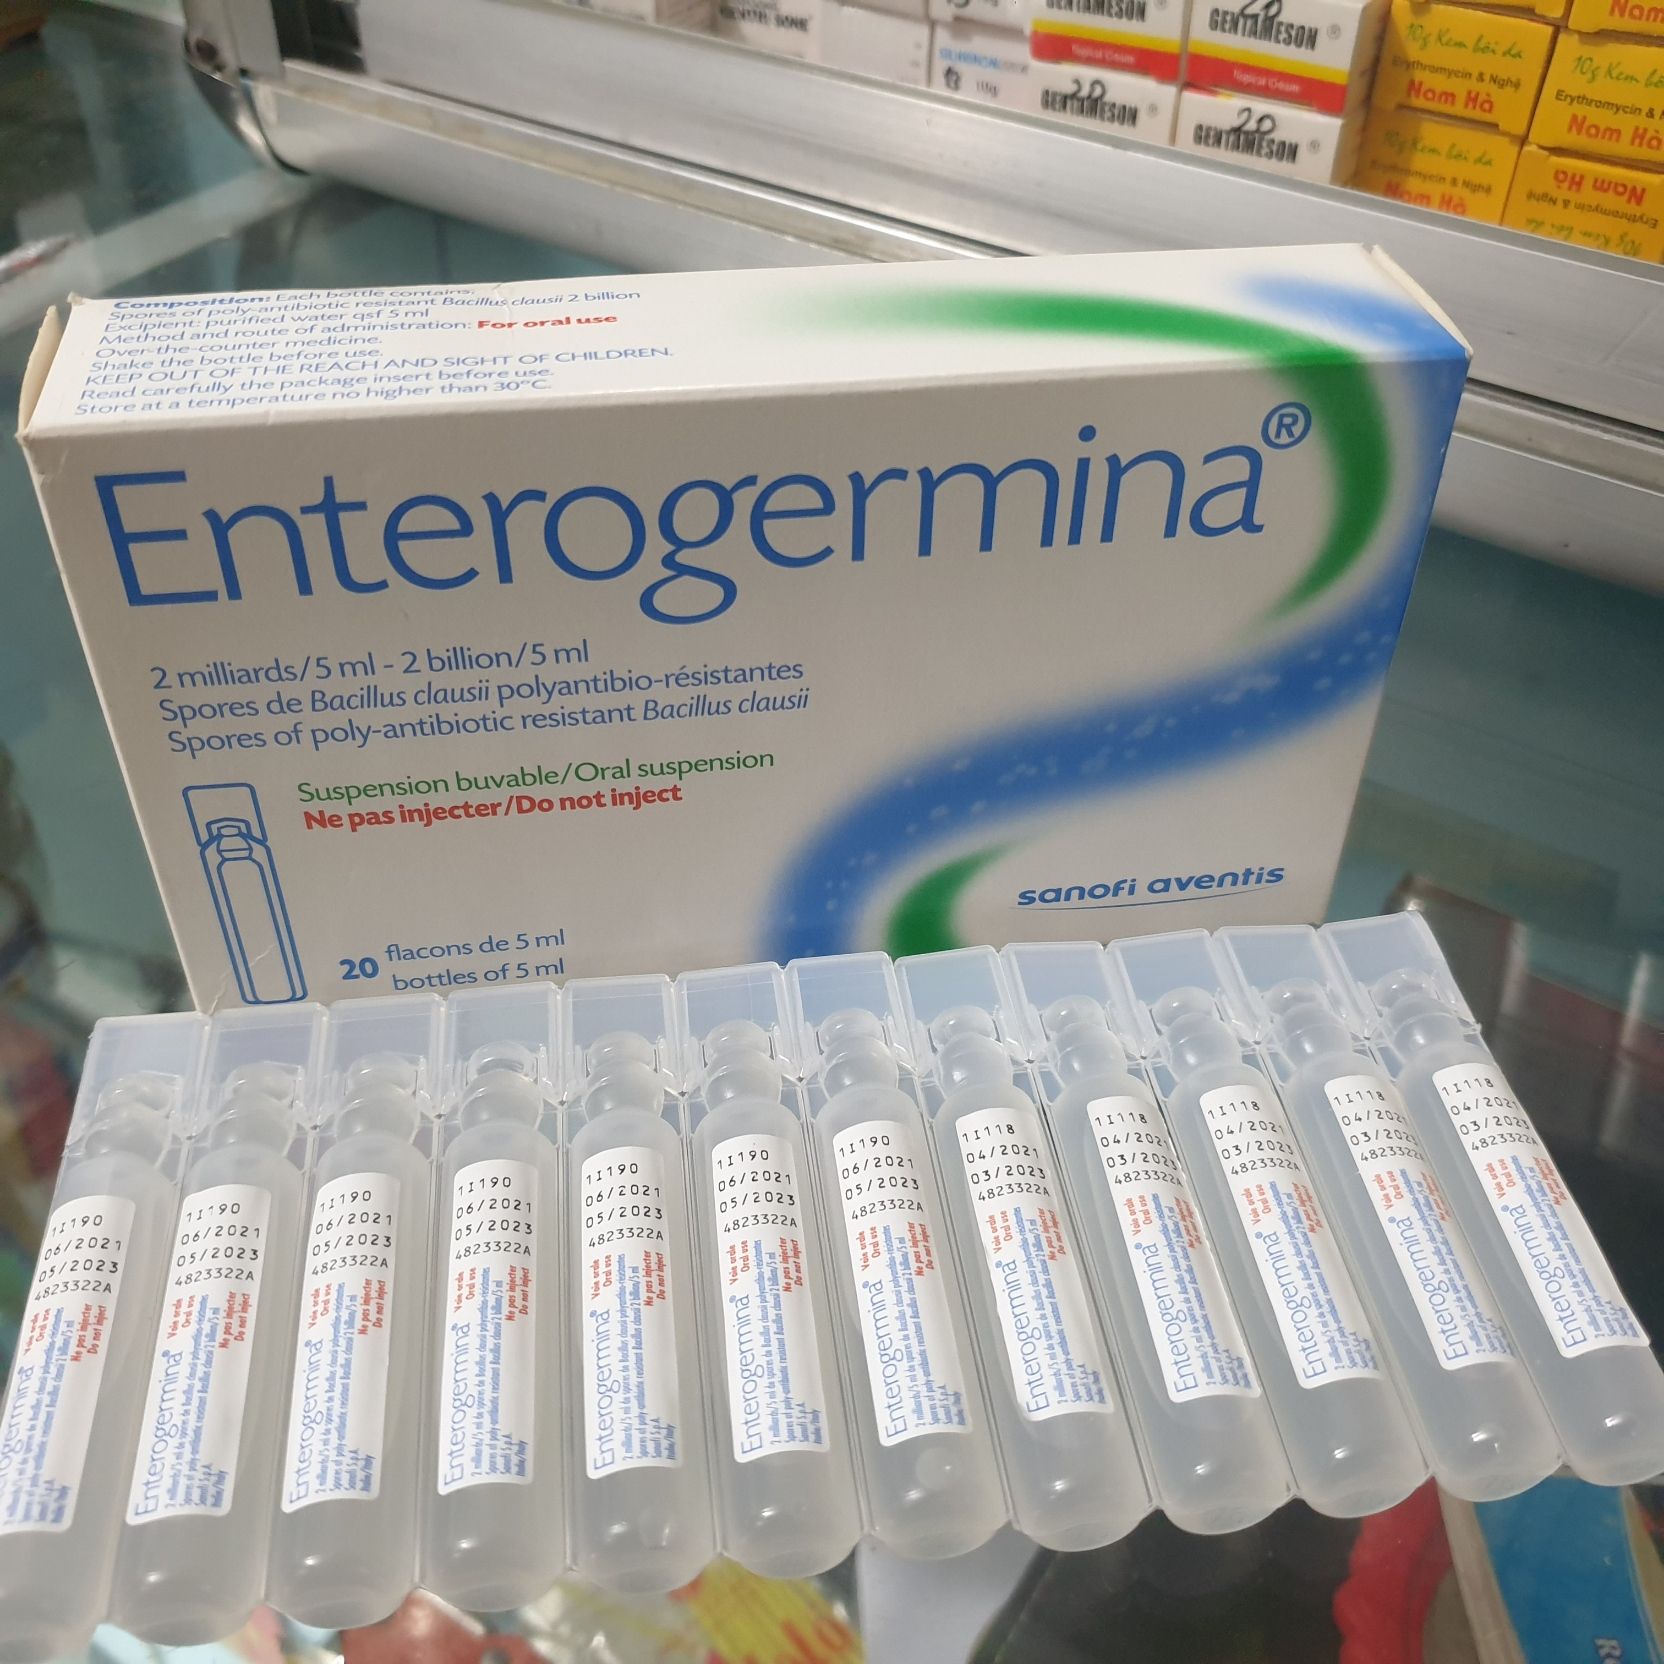 Enterogermina 2 billion 5ml - chống loạn khuẩn đường ruột - ảnh sản phẩm 1